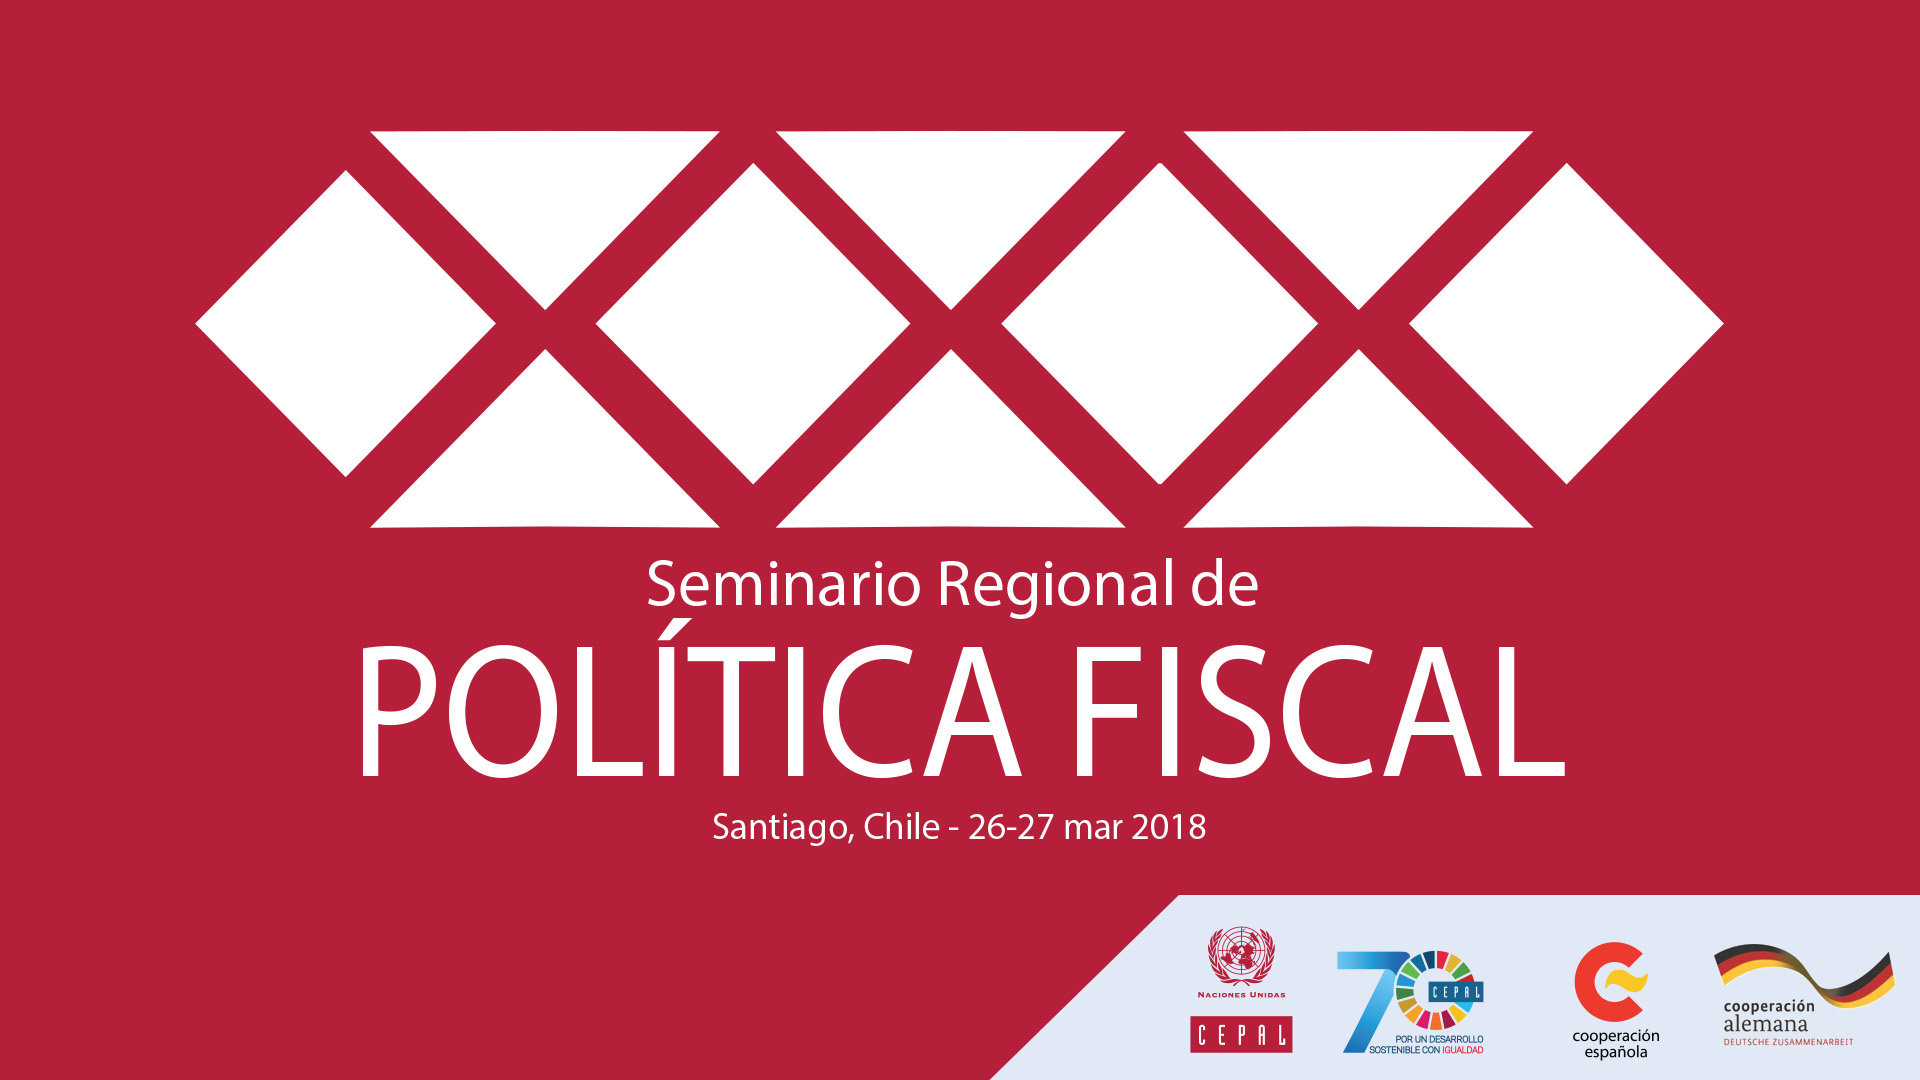 Banner Seminario Política Fiscal 2018